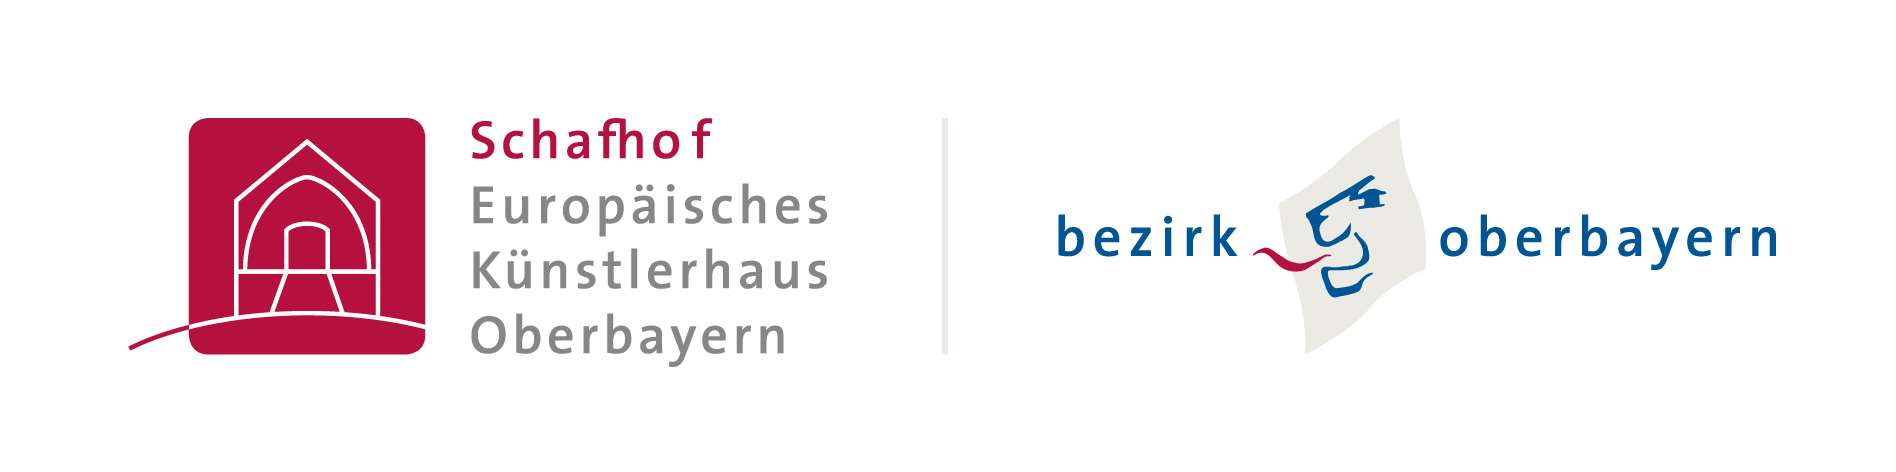 schafhof-logo2014 on white